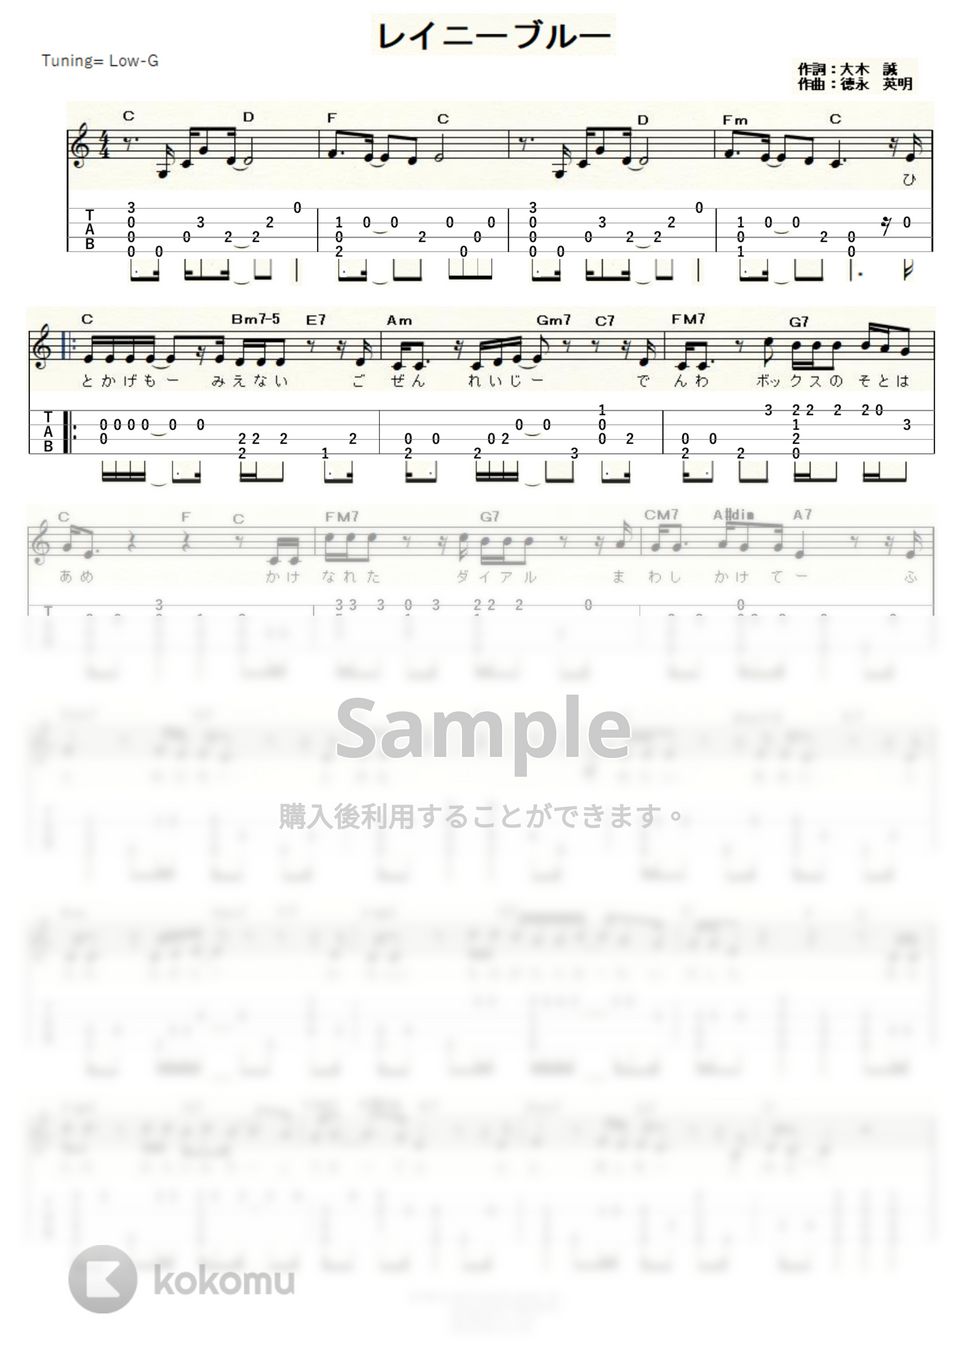 徳永英明 - レイニーブルー (ｳｸﾚﾚｿﾛ / Low-G / 中級) by ukulelepapa